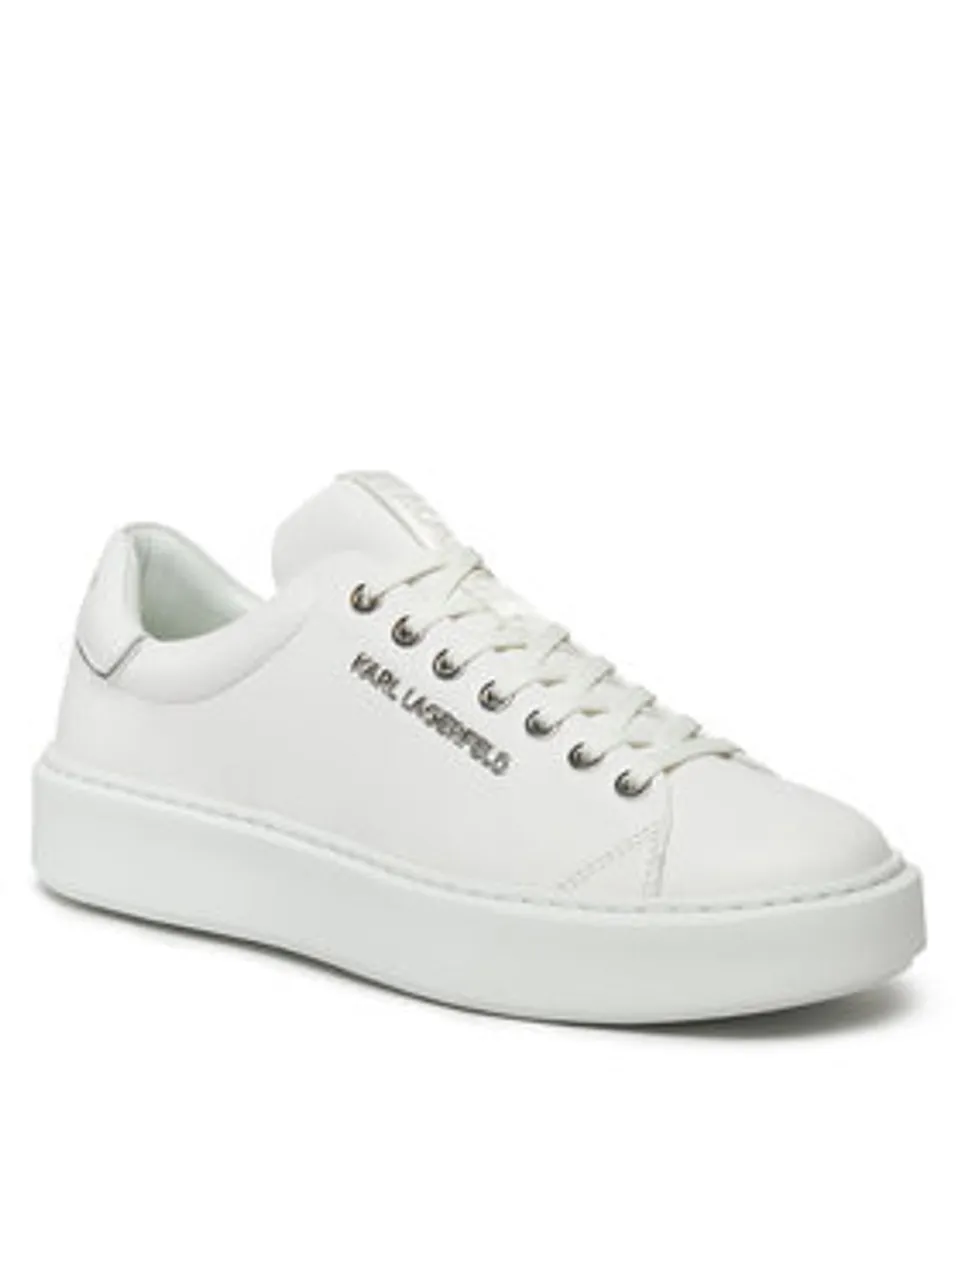 KARL LAGERFELD Sneakers KL52219 Weiß